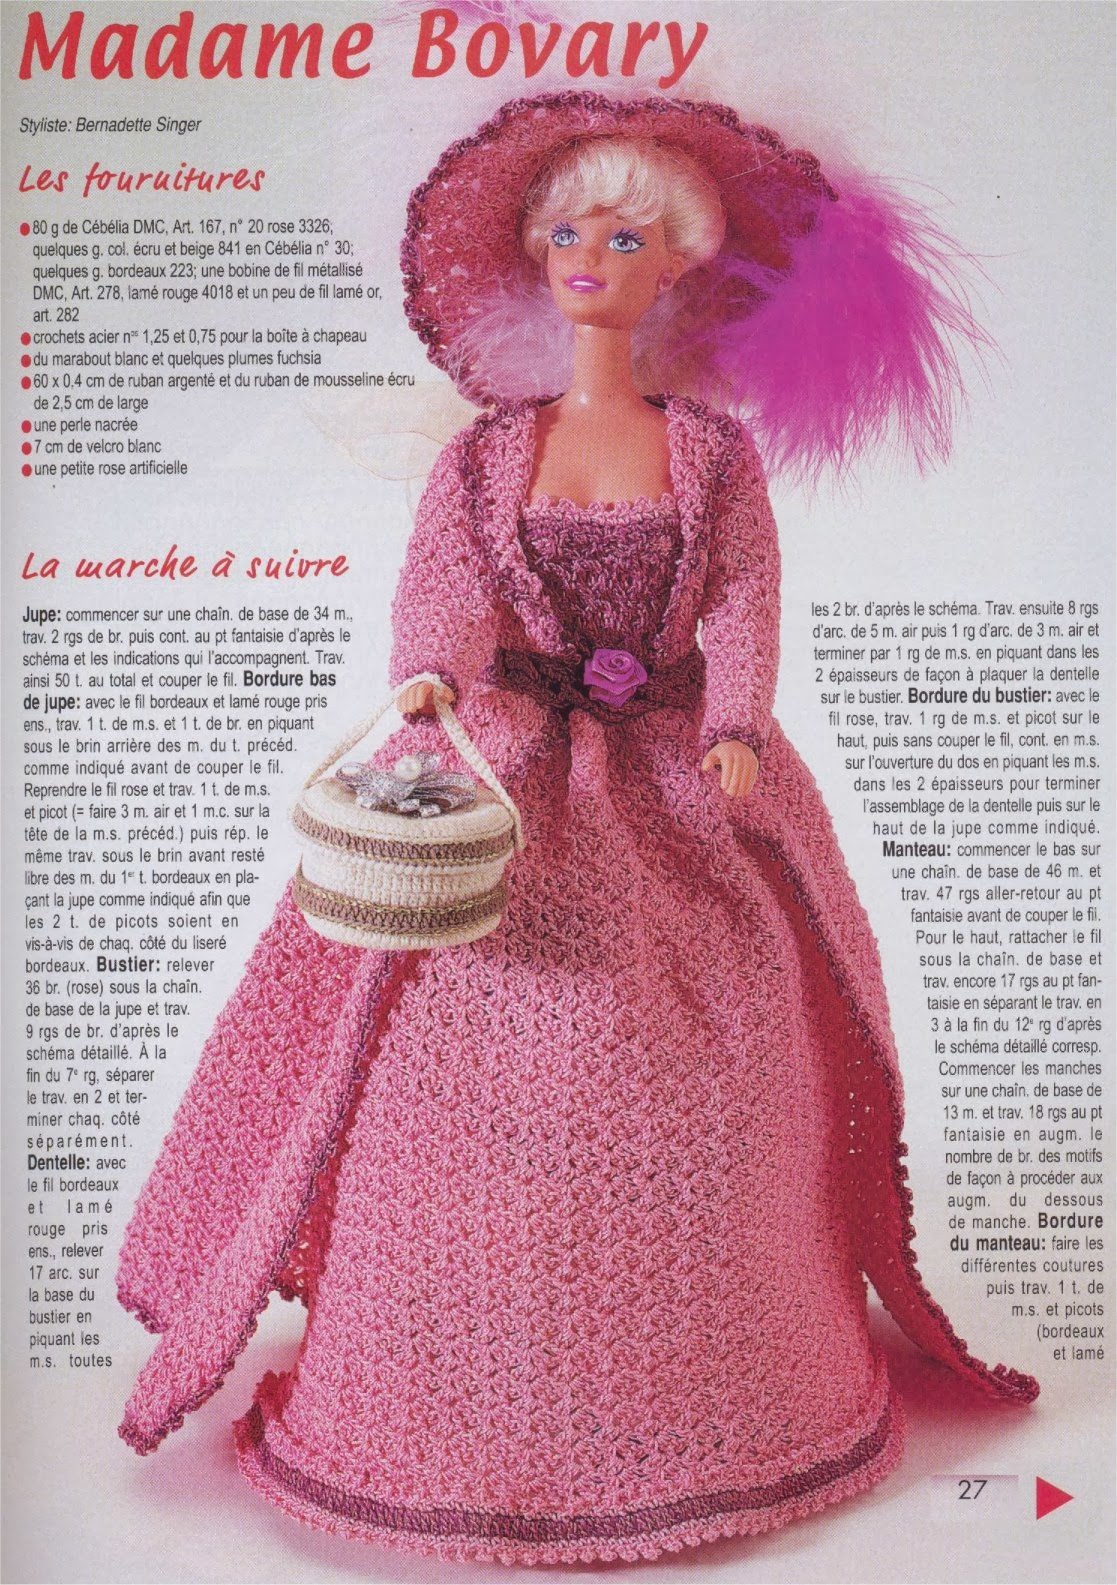 Crochê Barbie - Vestido Retrô de Crochê Para Barbie Por Pecunia Milliom 